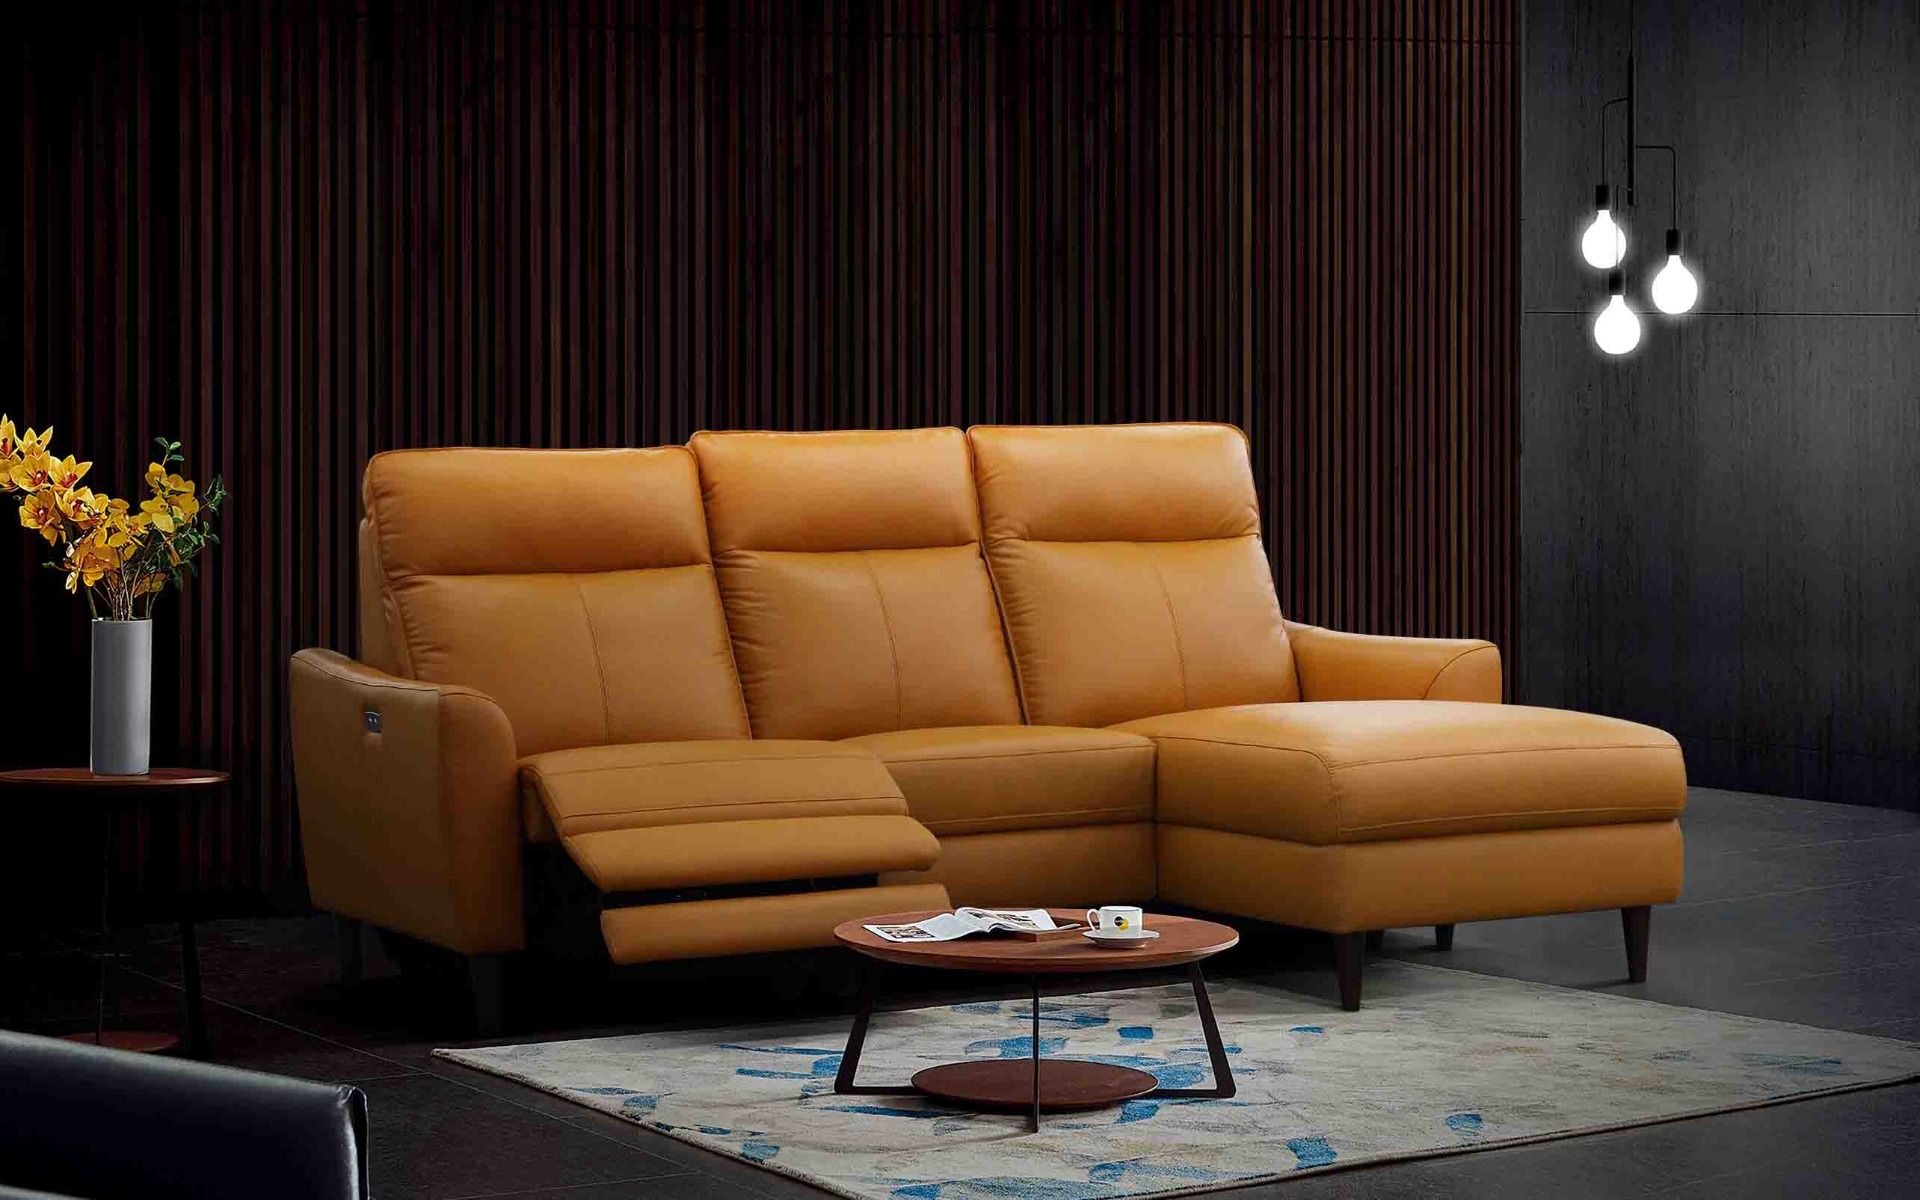 L-shaped recliner sofa